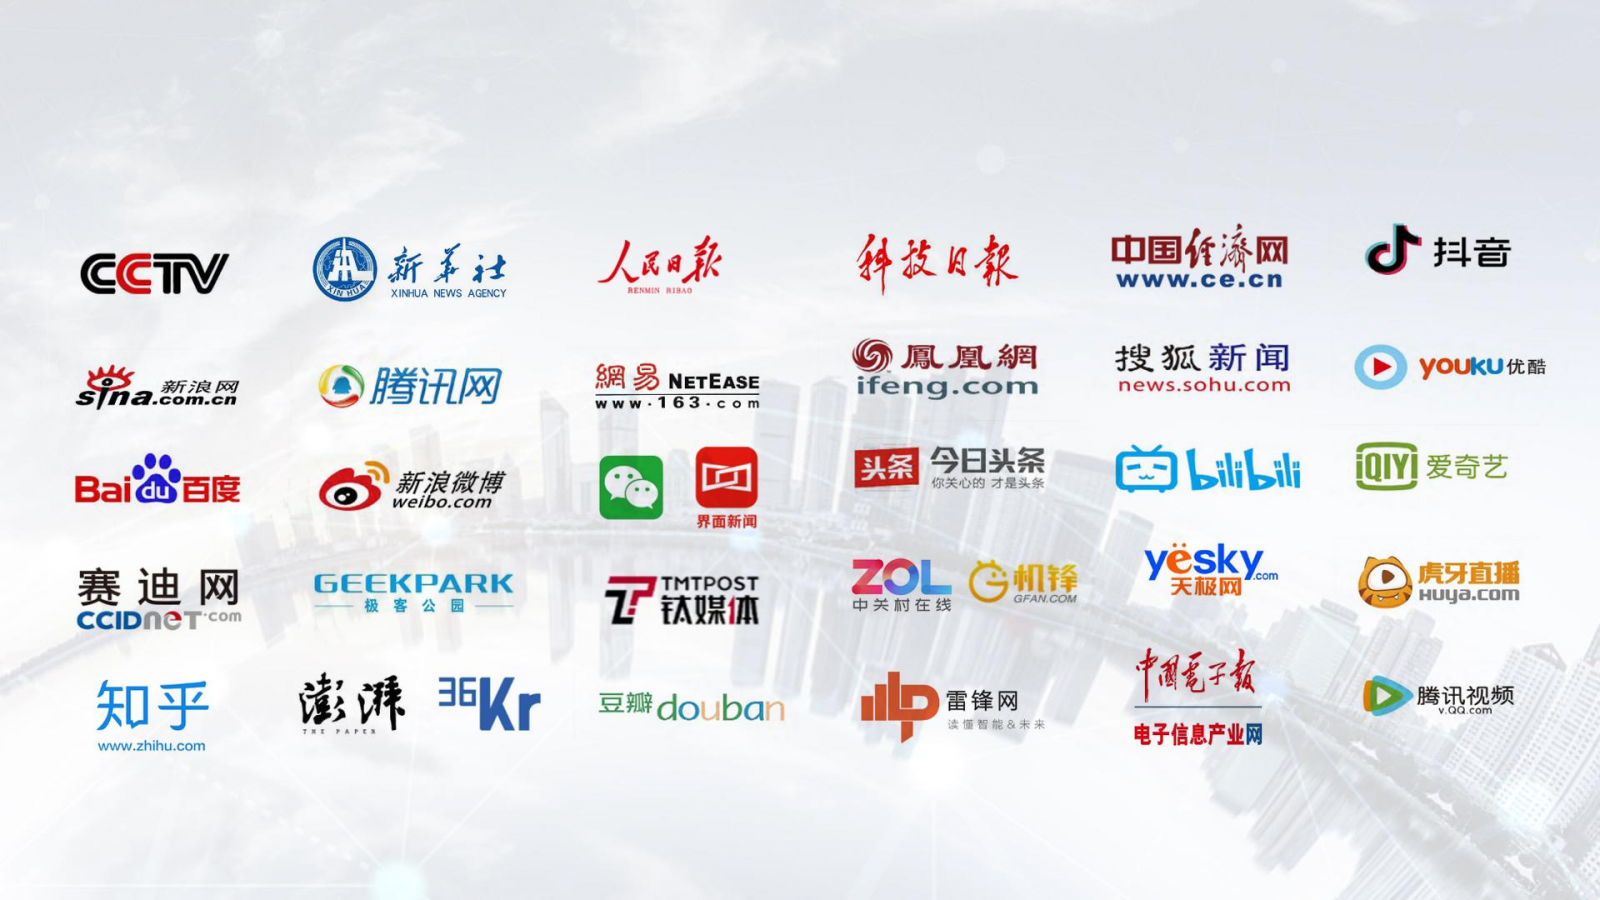 2022互联网技术与应用博览会 同期举办中国互联网大会